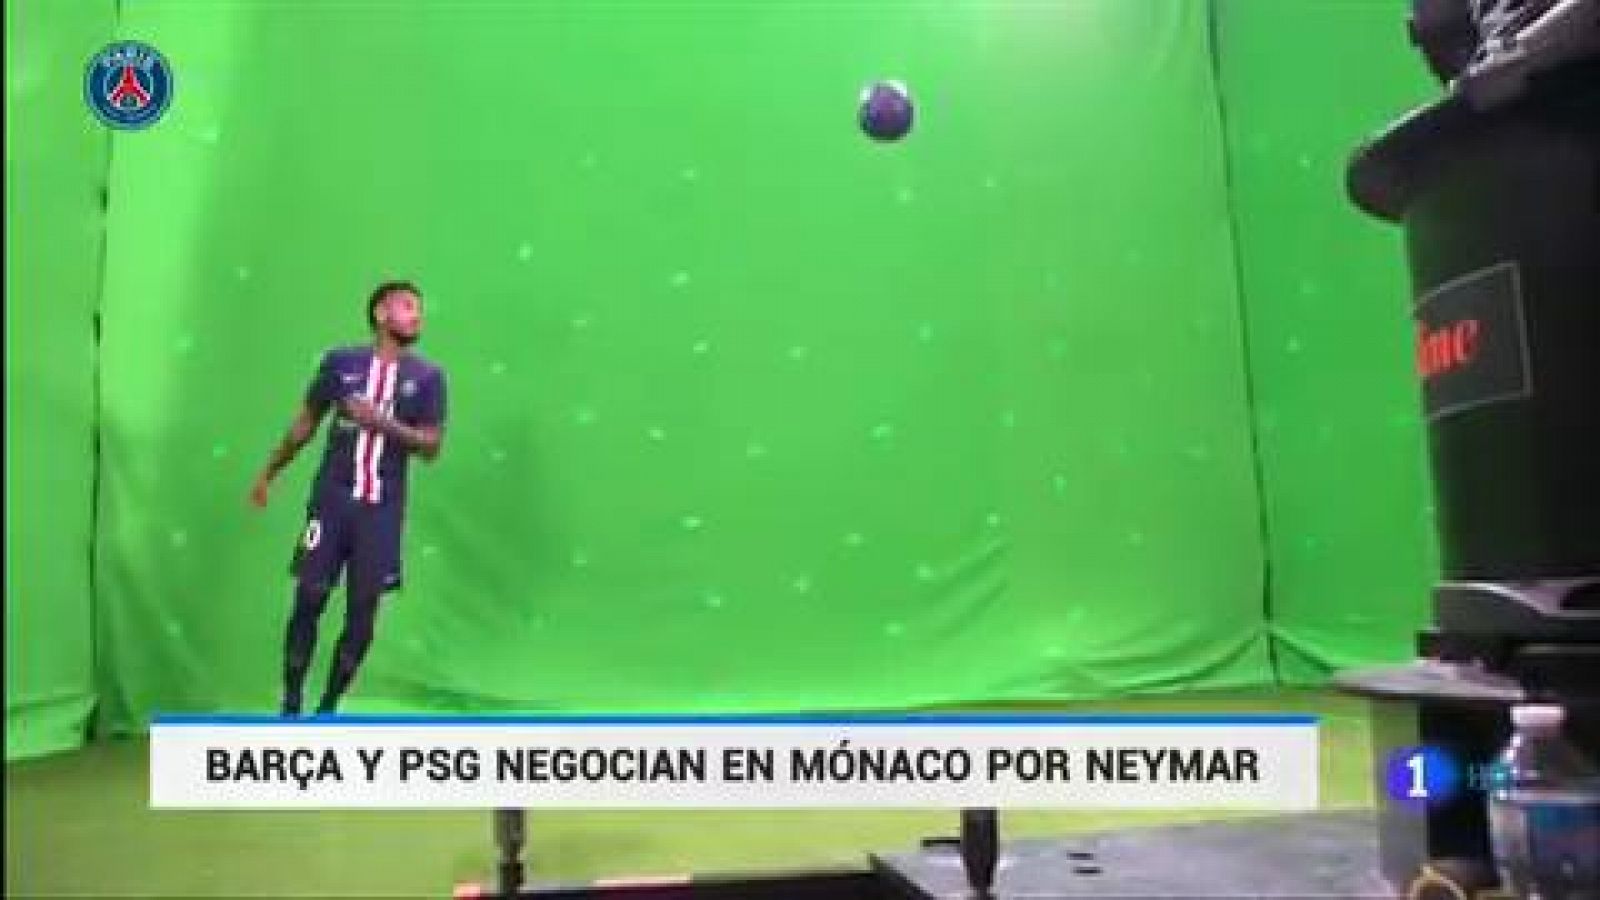 Neymar: Barça y PSG negocian en Mónaco - rtve.es